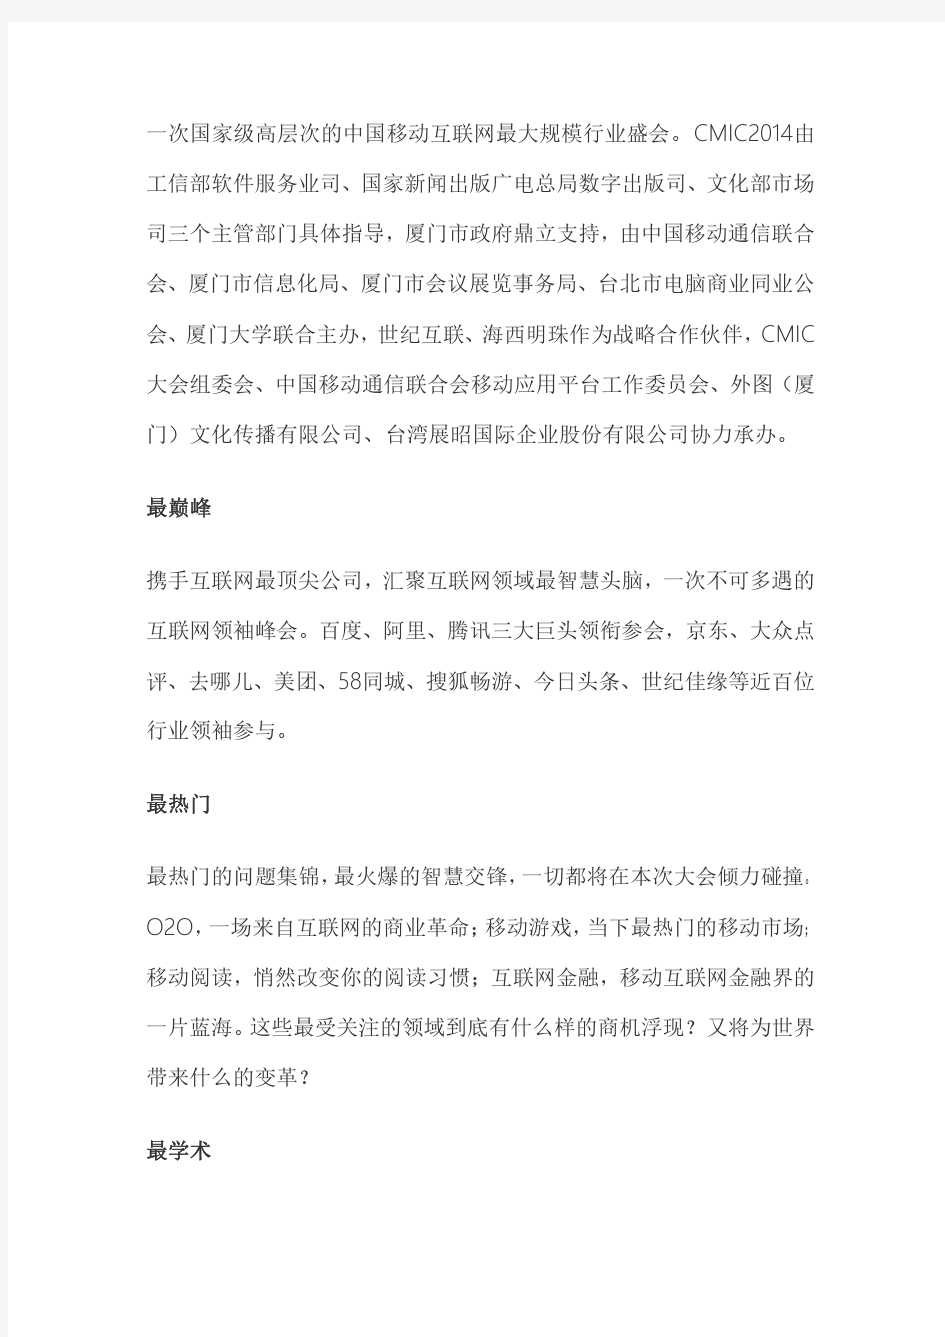 第三届中国移动互联网大会(CMIC2014)邀请函